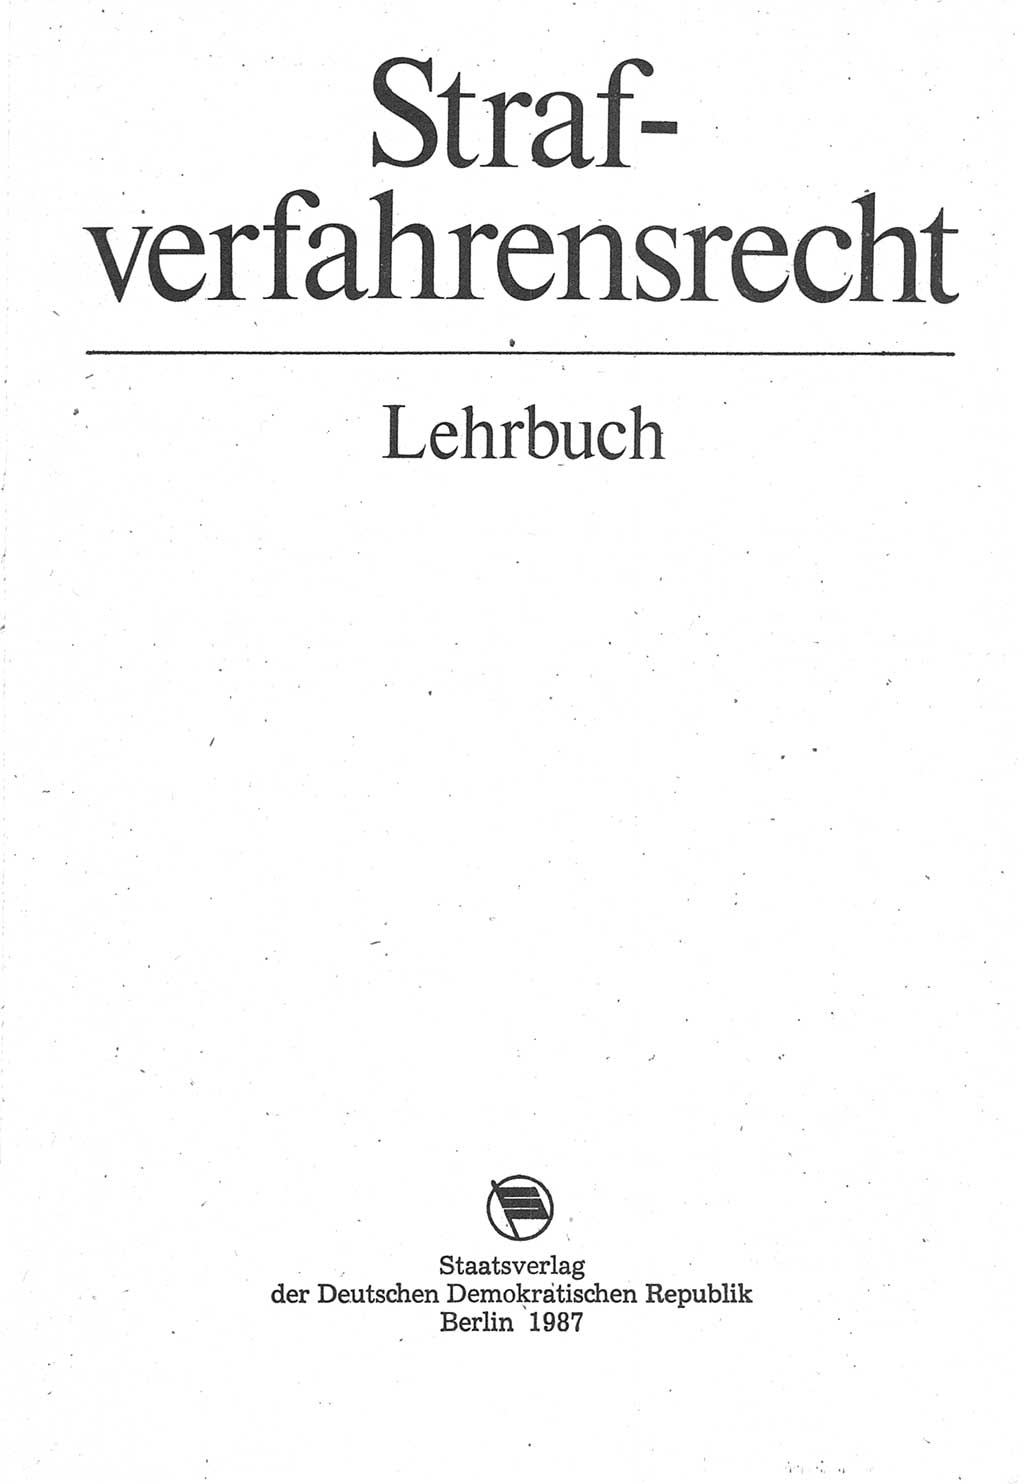 Strafverfahrensrecht [Deutsche Demokratische Republik (DDR)], Lehrbuch 1987, Seite 3 (Strafverf.-R. DDR Lb. 1987, S. 3)